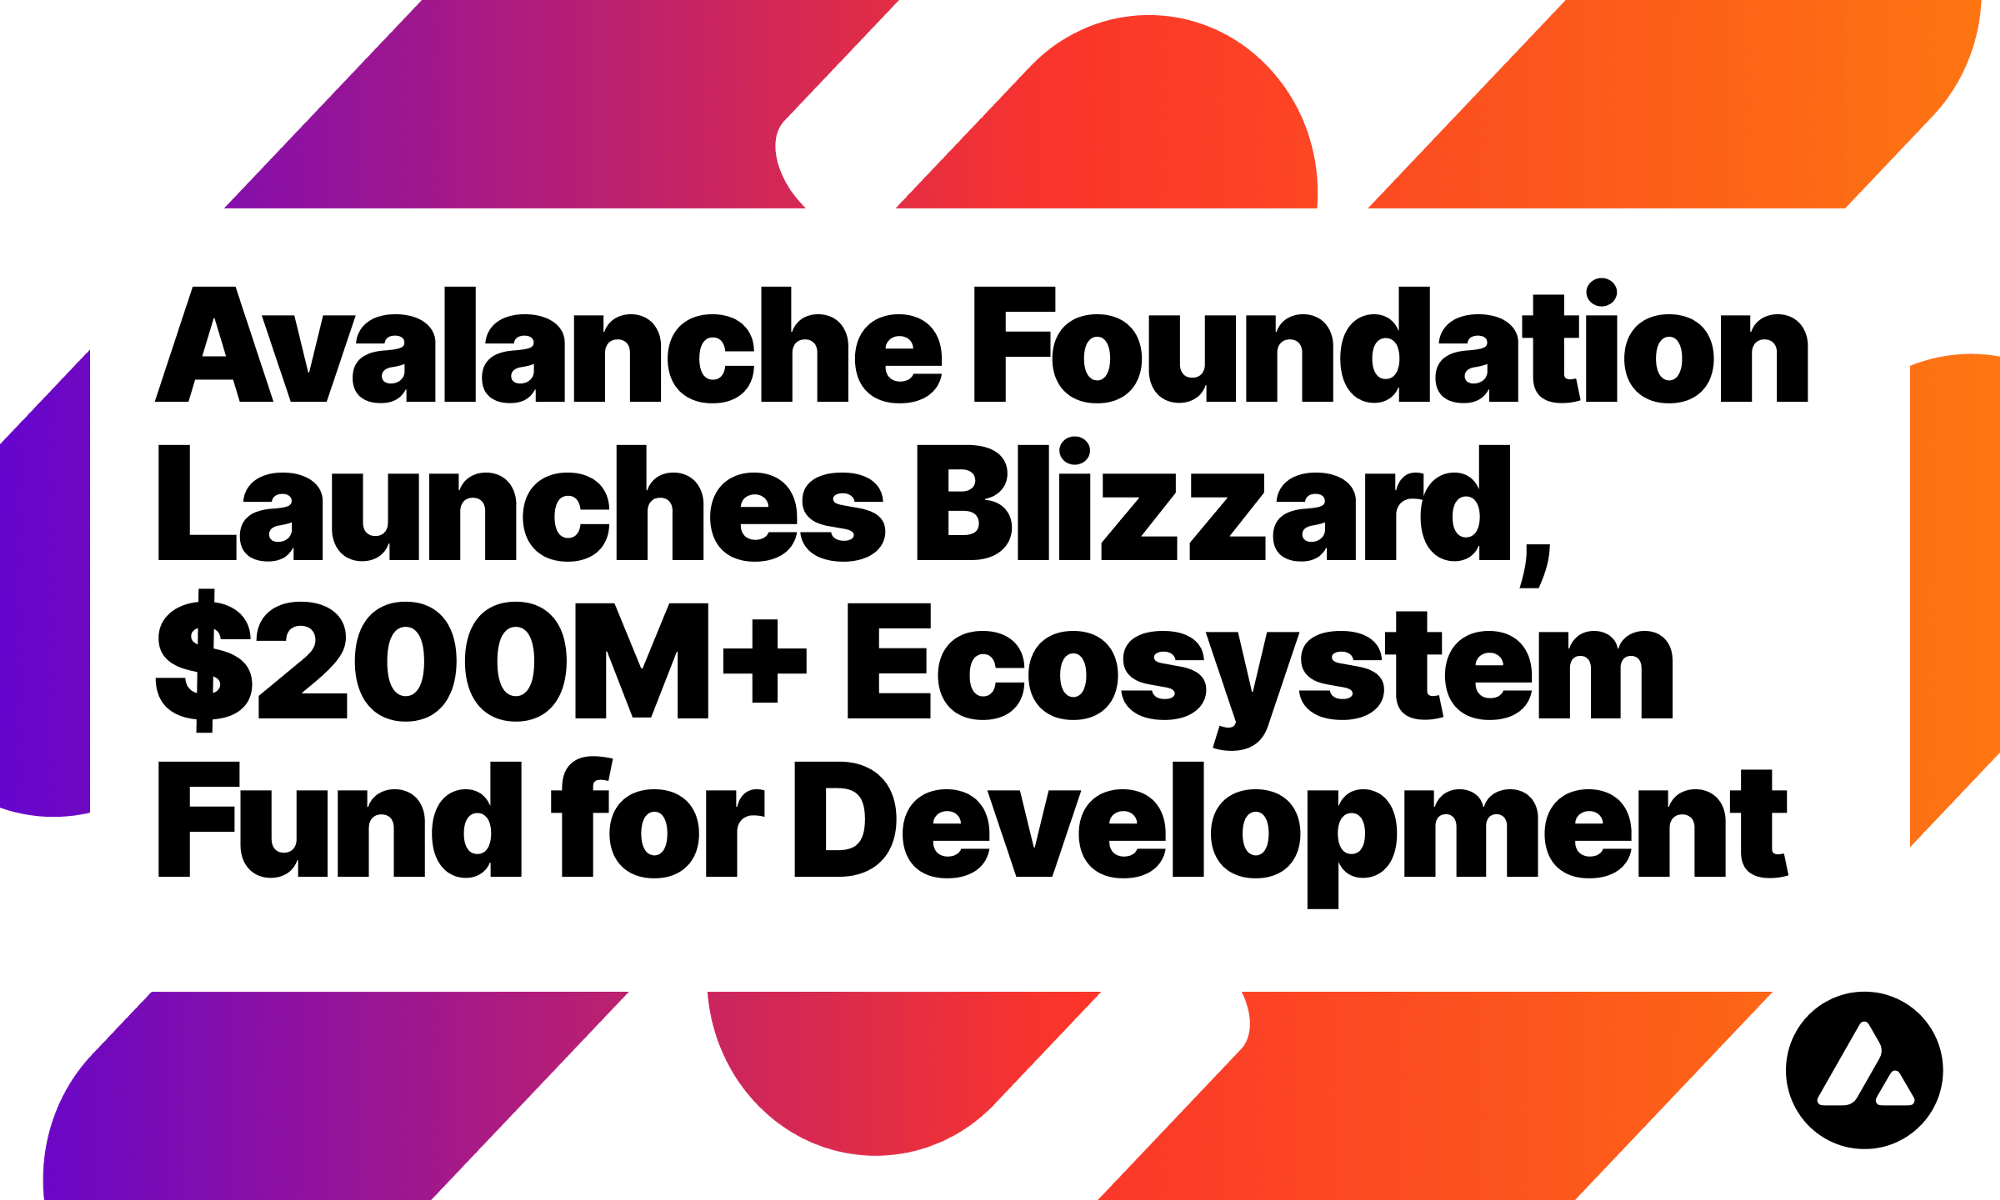 Avalanche Foundation đã ra mắt Blizzard